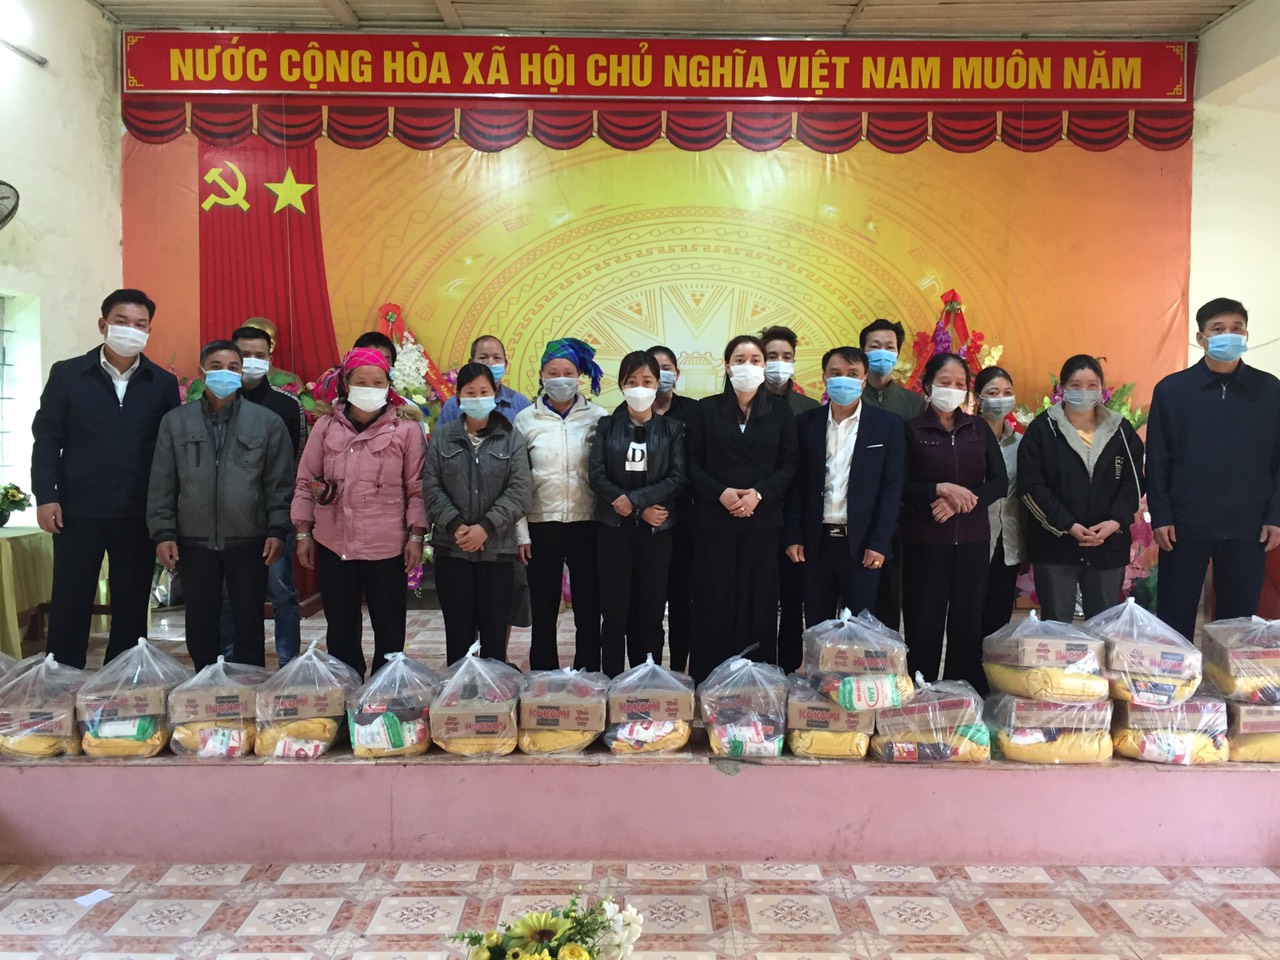 Đồng chí Nguyễn Thùy Linh, trưởng ban dân vận huyện ủy thăm và tặng quà cho các hộ nghèo tại xã Vĩnh Hảo